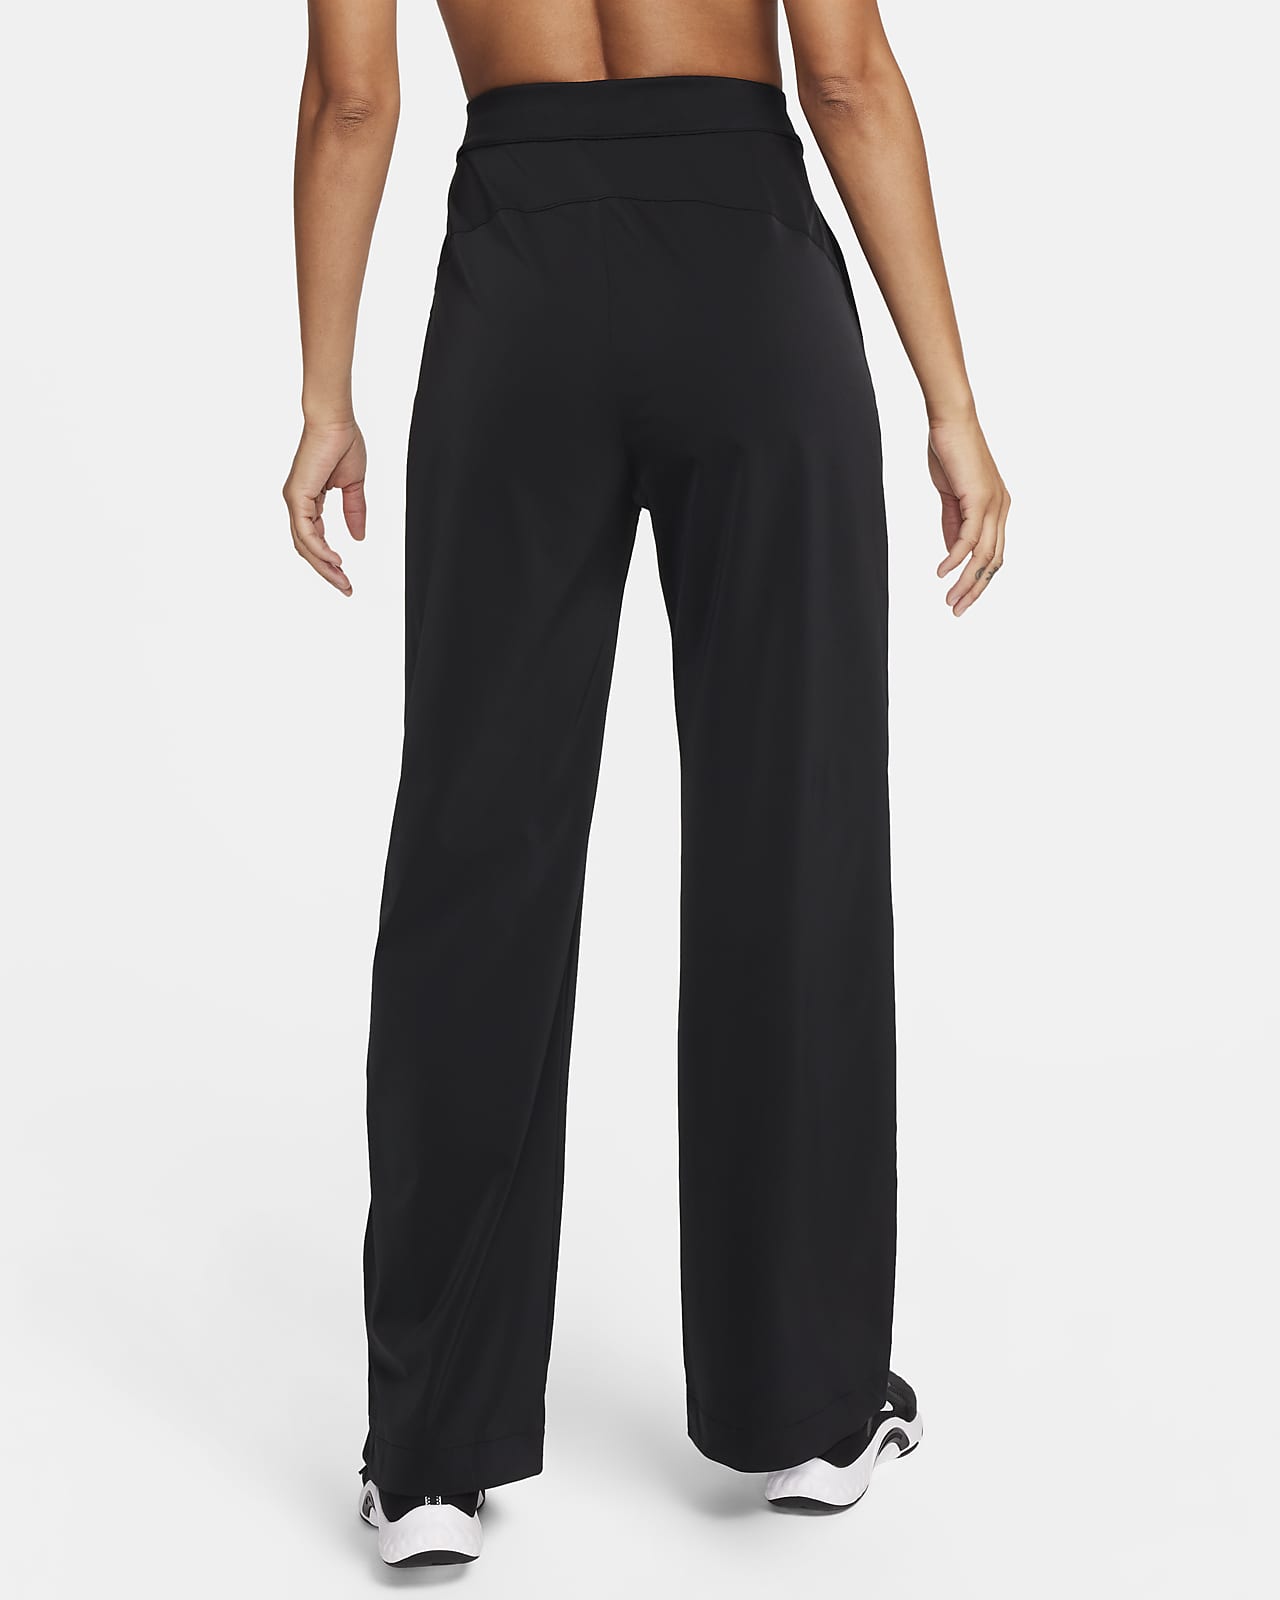 Nike Dri-Fit Swift Slim Fit Running Pants Mens Sz 2XL XXL Black CU5493-010  NEW!! | eBay